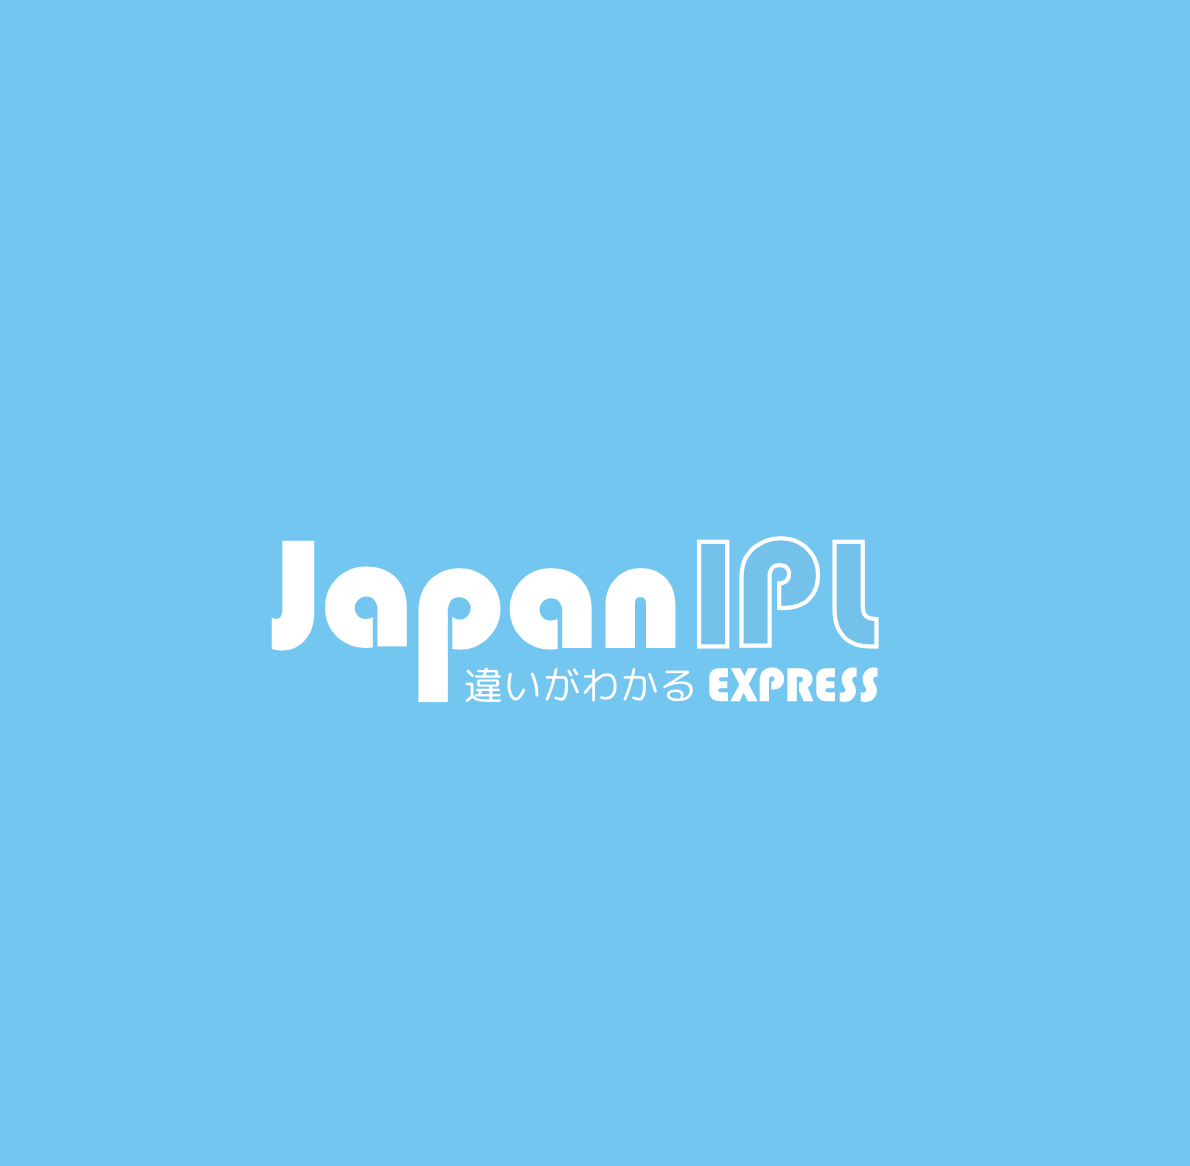 Japan IPL